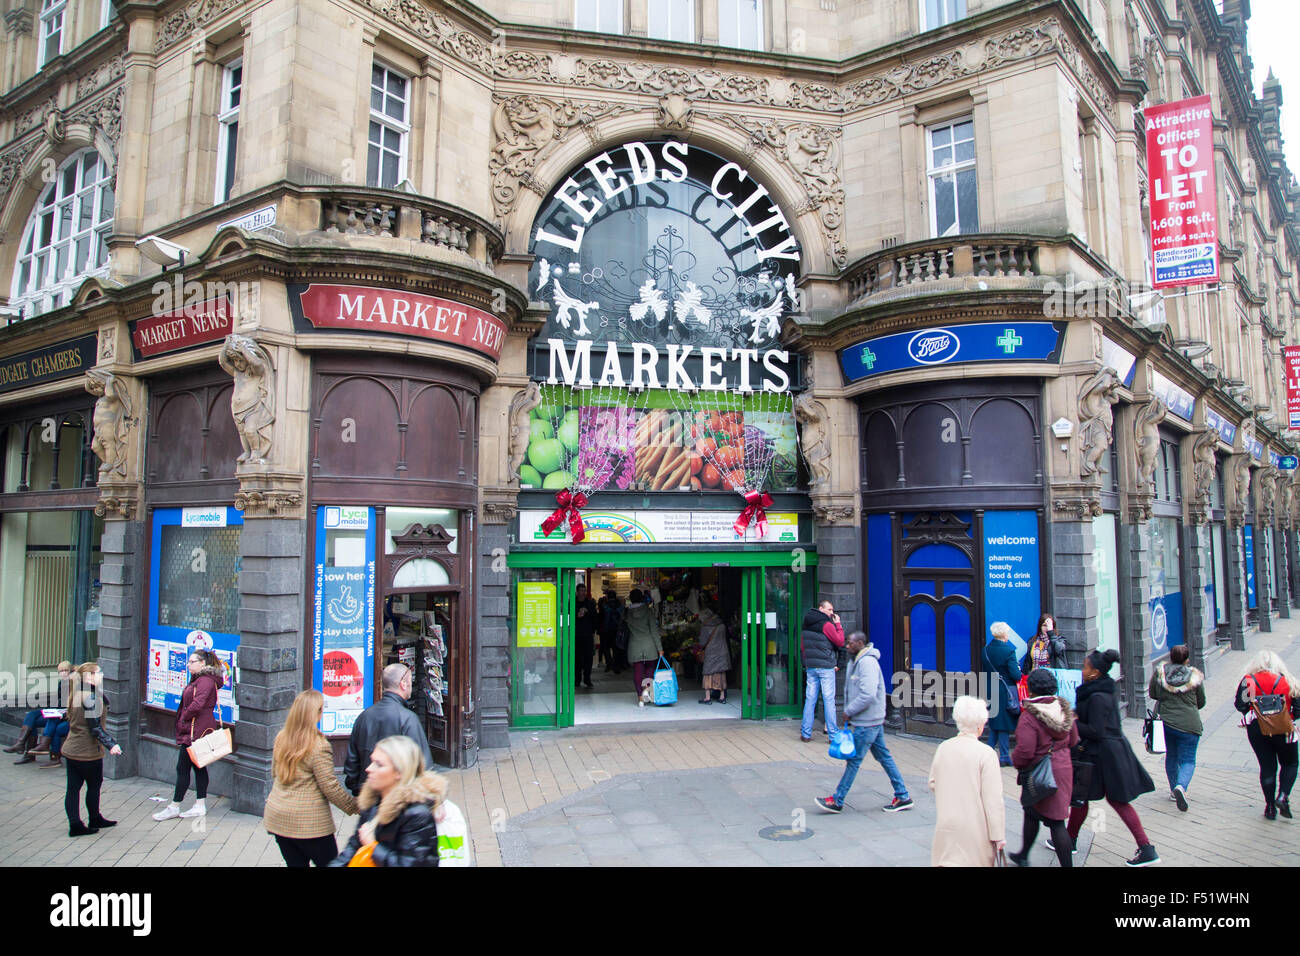 Mercado kirkgate leeds en West Yorkshire, Reino Unido es el mayor mercado cubierto de Europa. Foto de stock